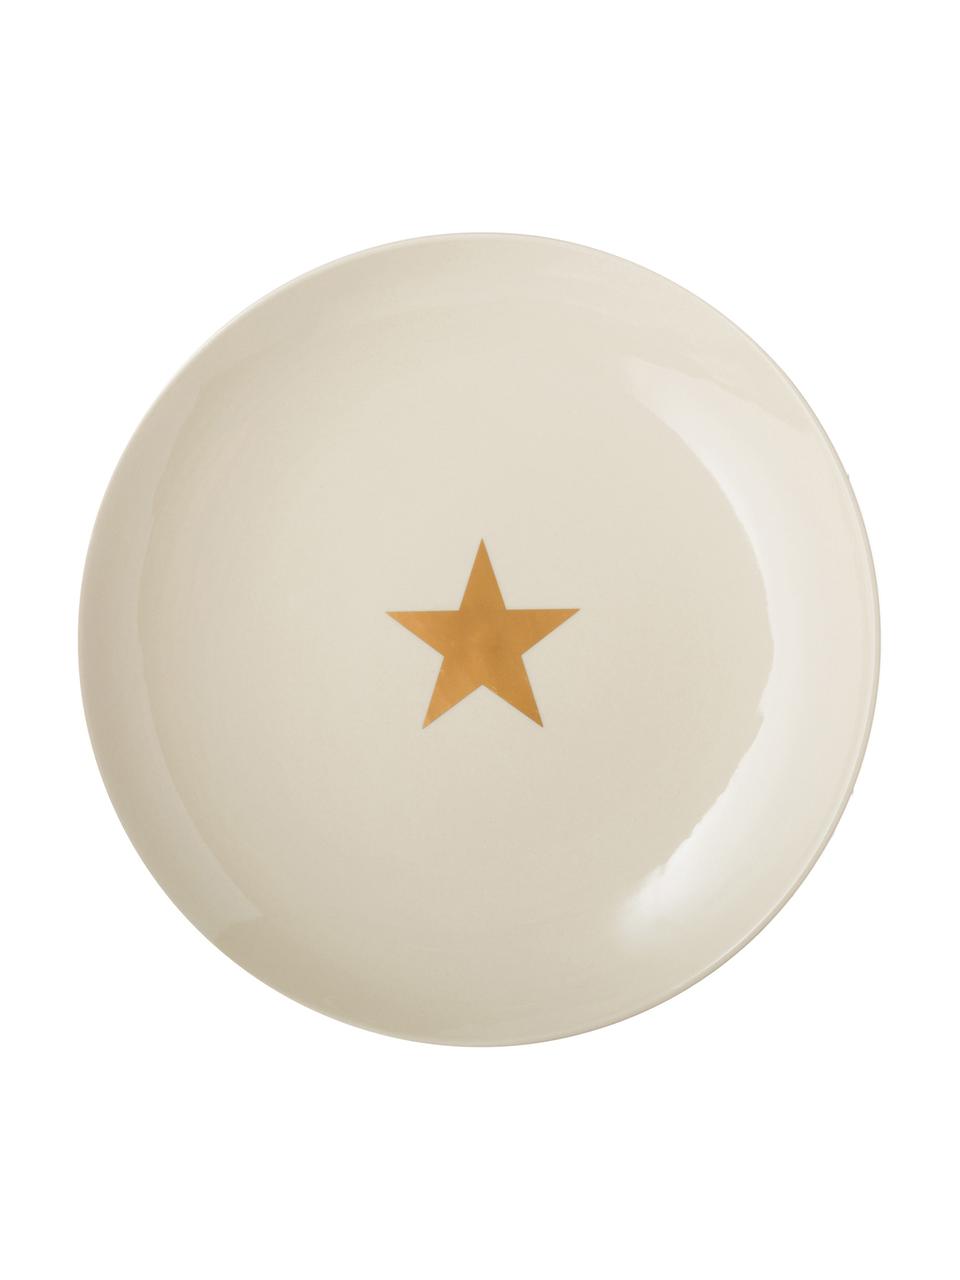 Dinerbord Star met goudkleurig ster, Keramiek, Gebroken wit, goudkleurig, Ø 25 cm